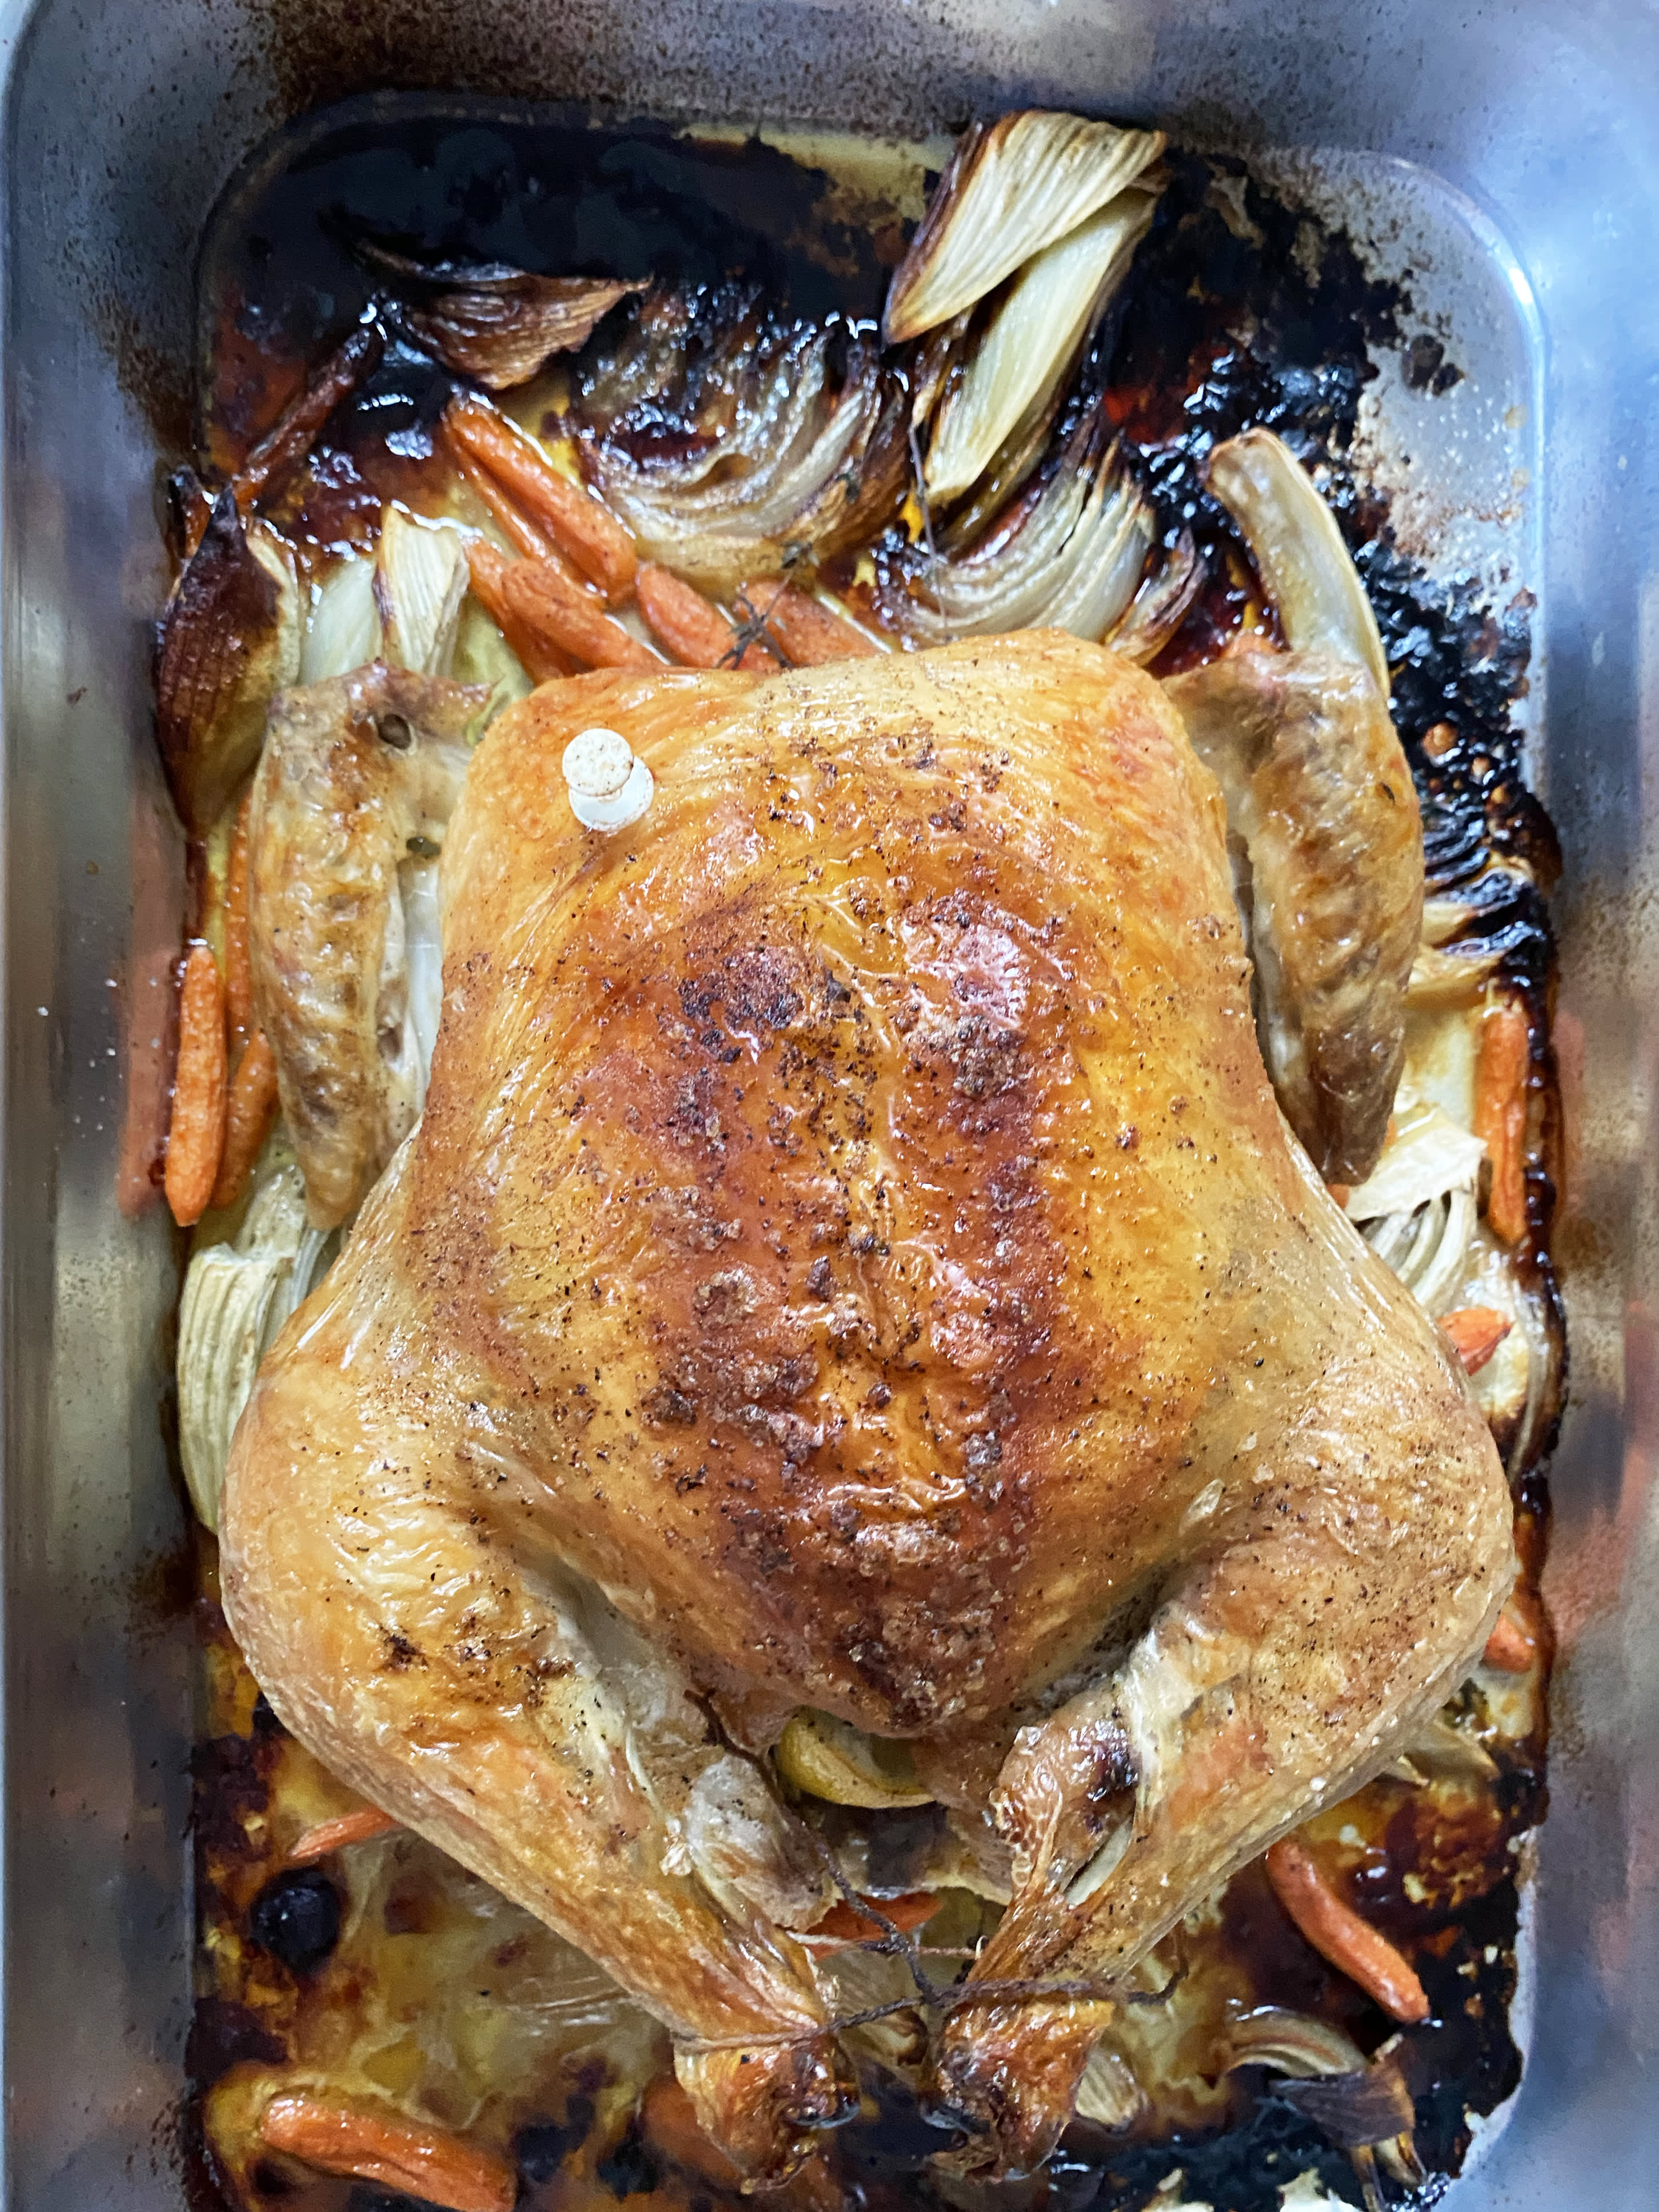 Ina Garten's Roast Chicken - The Cozy Cook